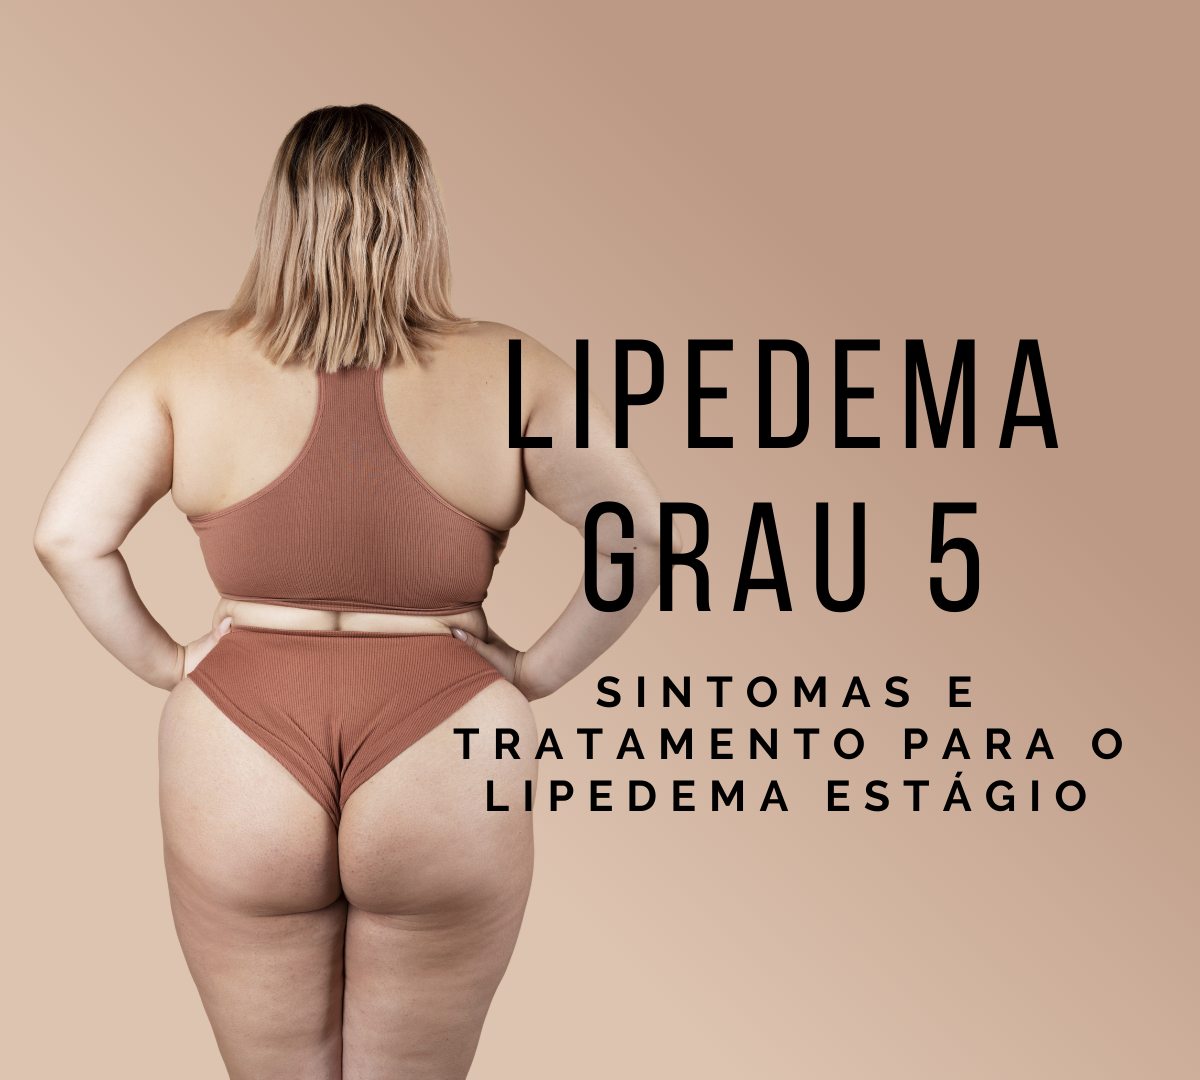 Lipedema Fotos: Pernas, braços e tornozelos - Dr. João Bragagnollo